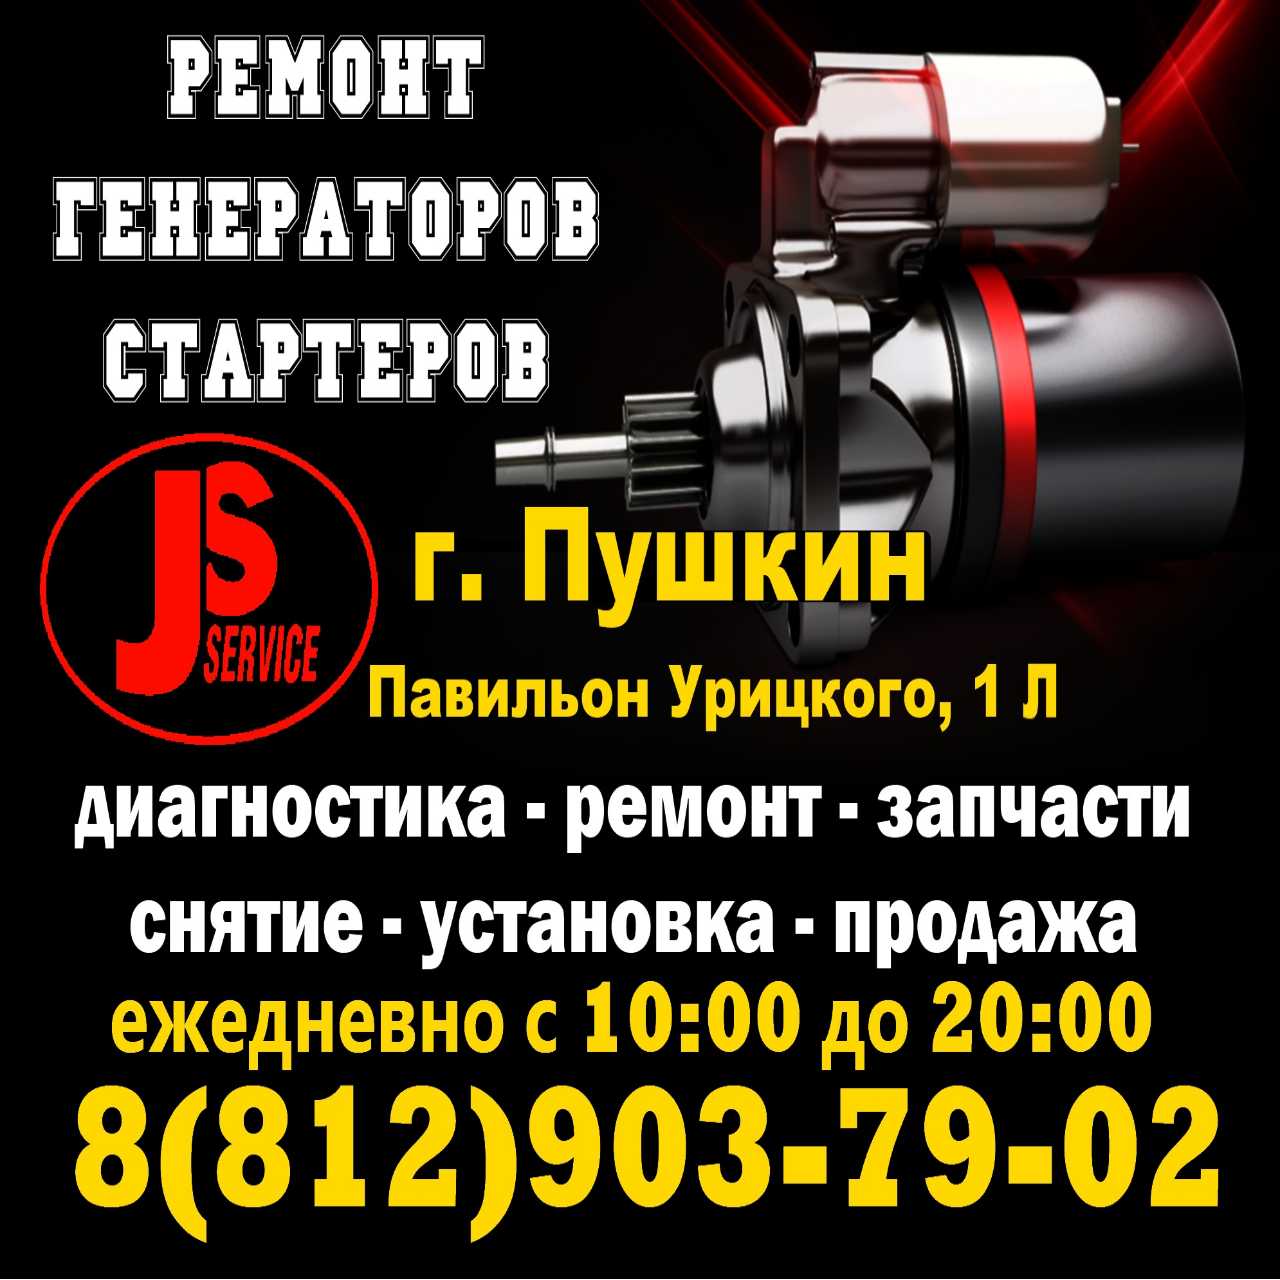 Ремонт стартеров и генераторов в Пушкине снятие установка запчасти 8-812-903-79-02